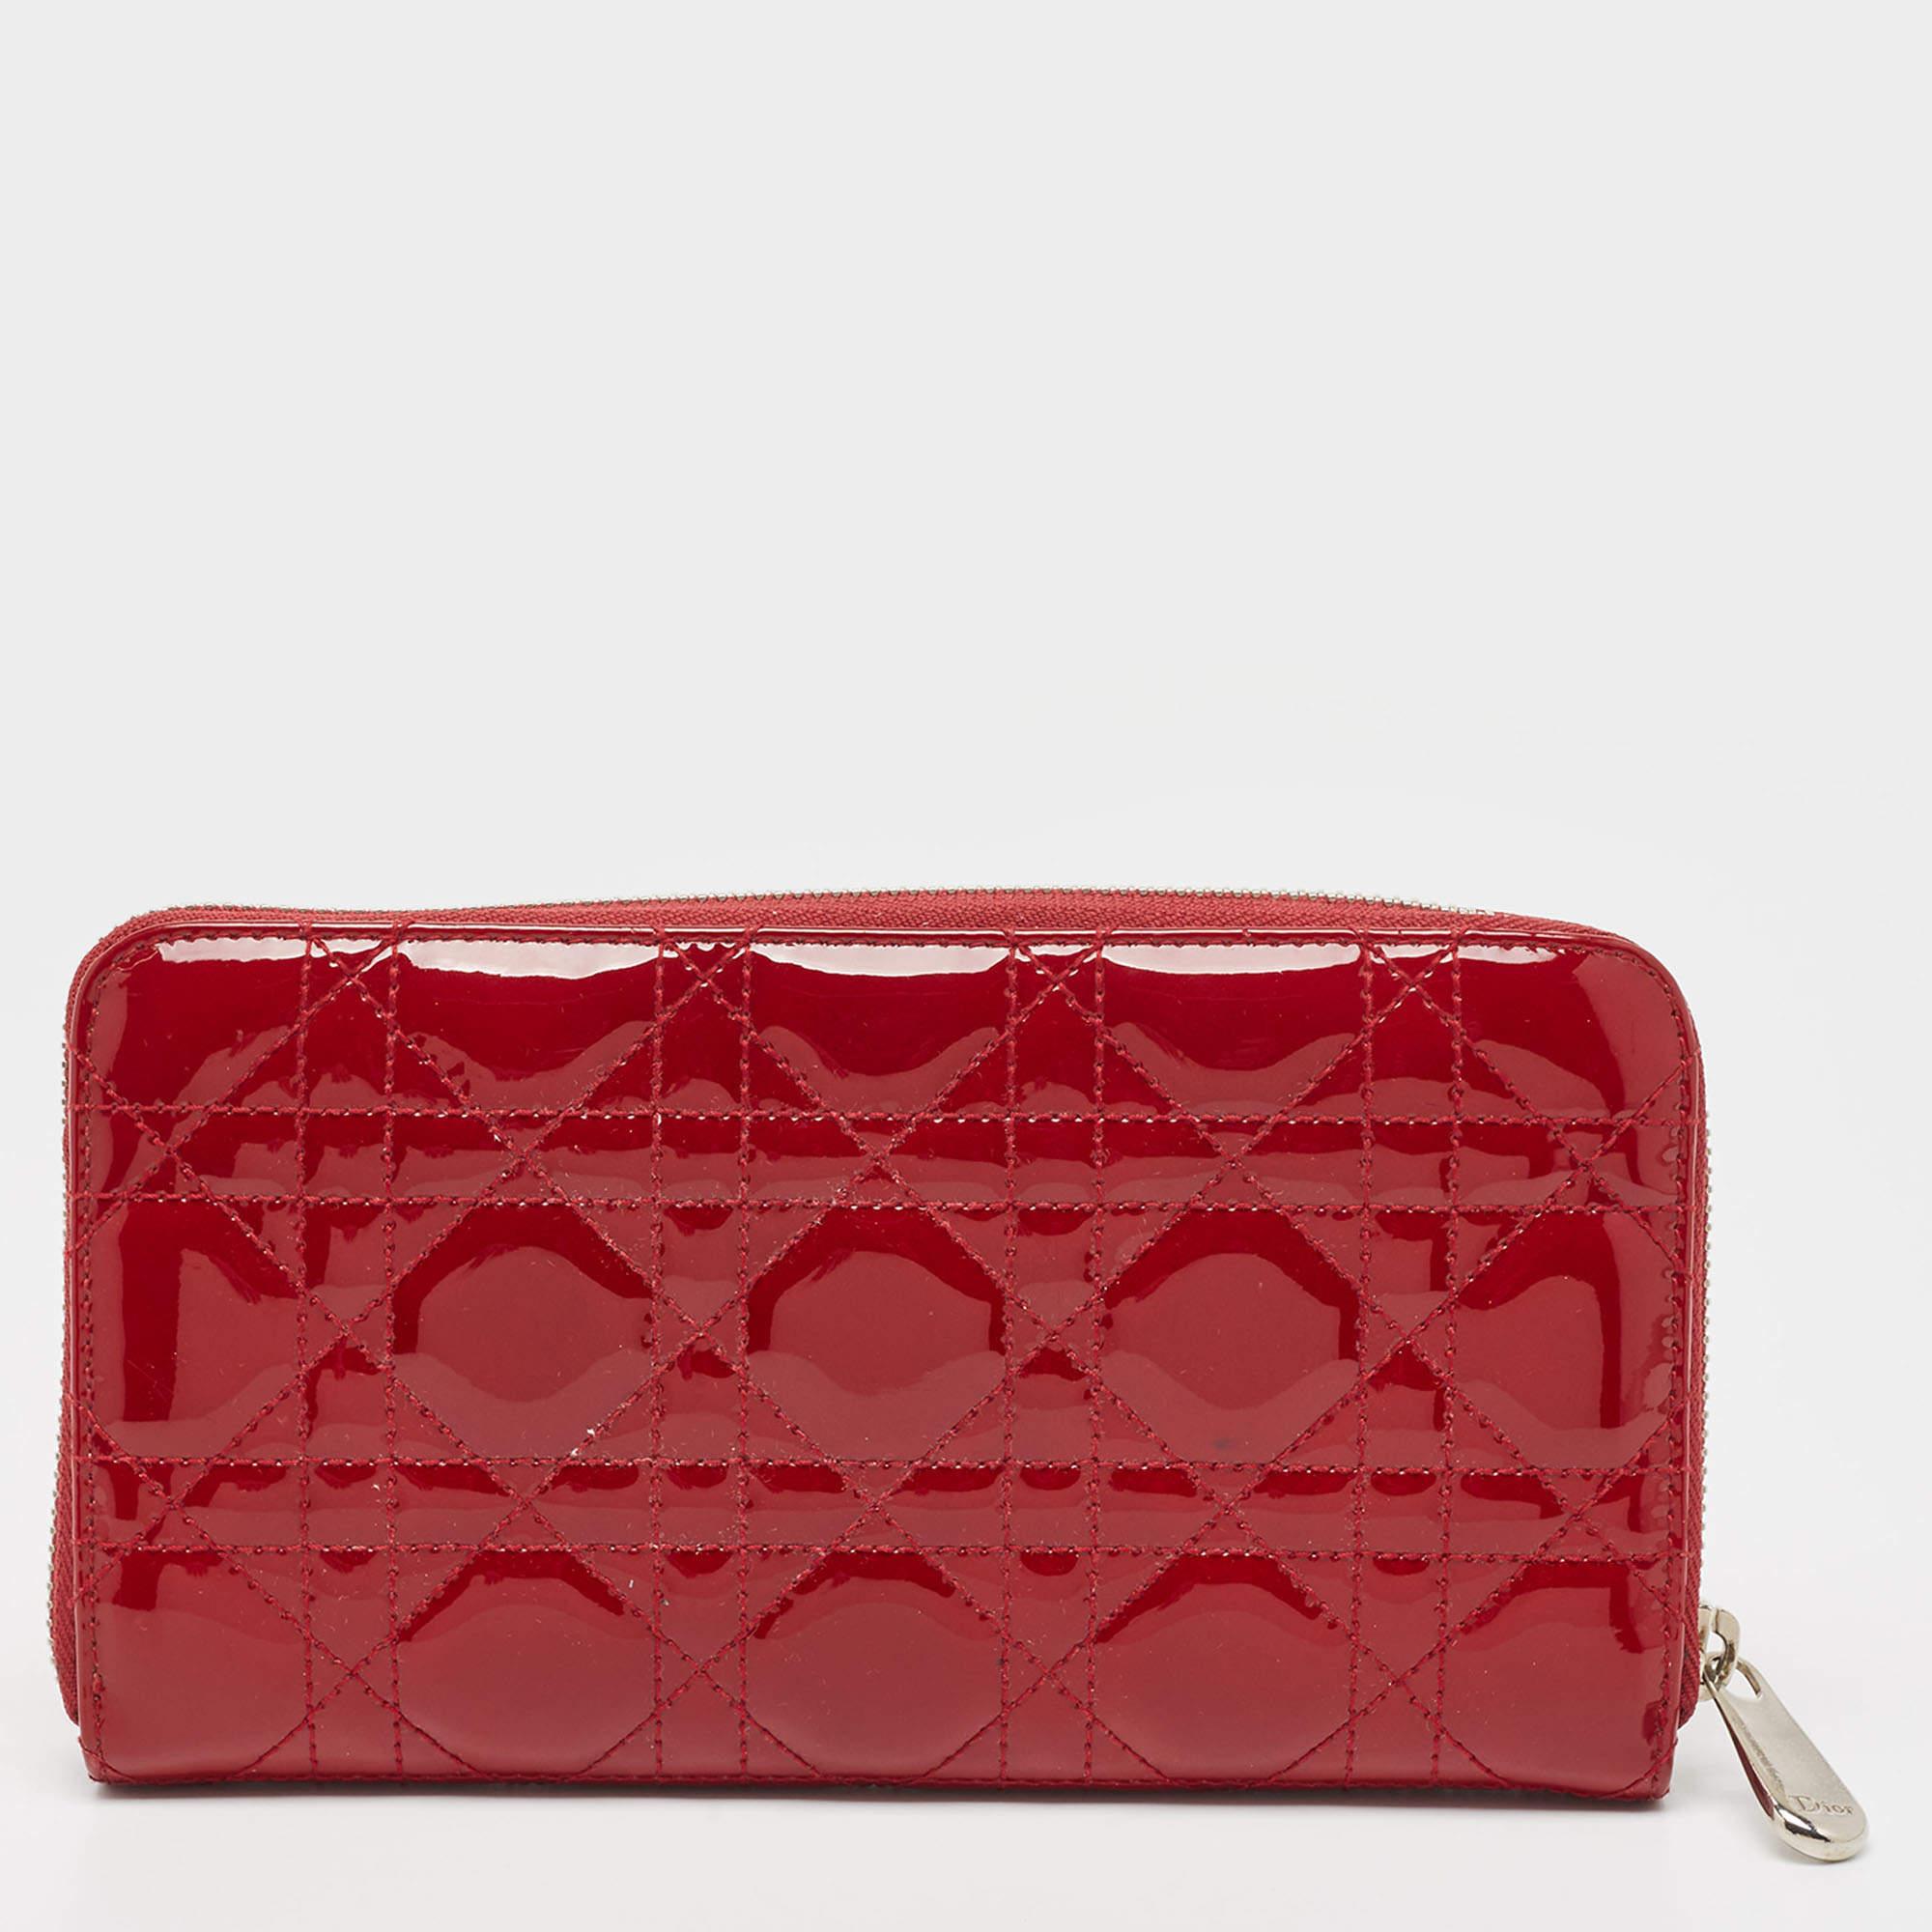 Mit diesem roten Portemonnaie von Dior verleihen Sie Ihrem Alltag mehr Eleganz. Er wurde sorgfältig aus hochwertigen Materialien gefertigt und verbindet Stil, Funktionalität und Raffinesse nahtlos miteinander, was ihn zu einer hervorragenden Wahl